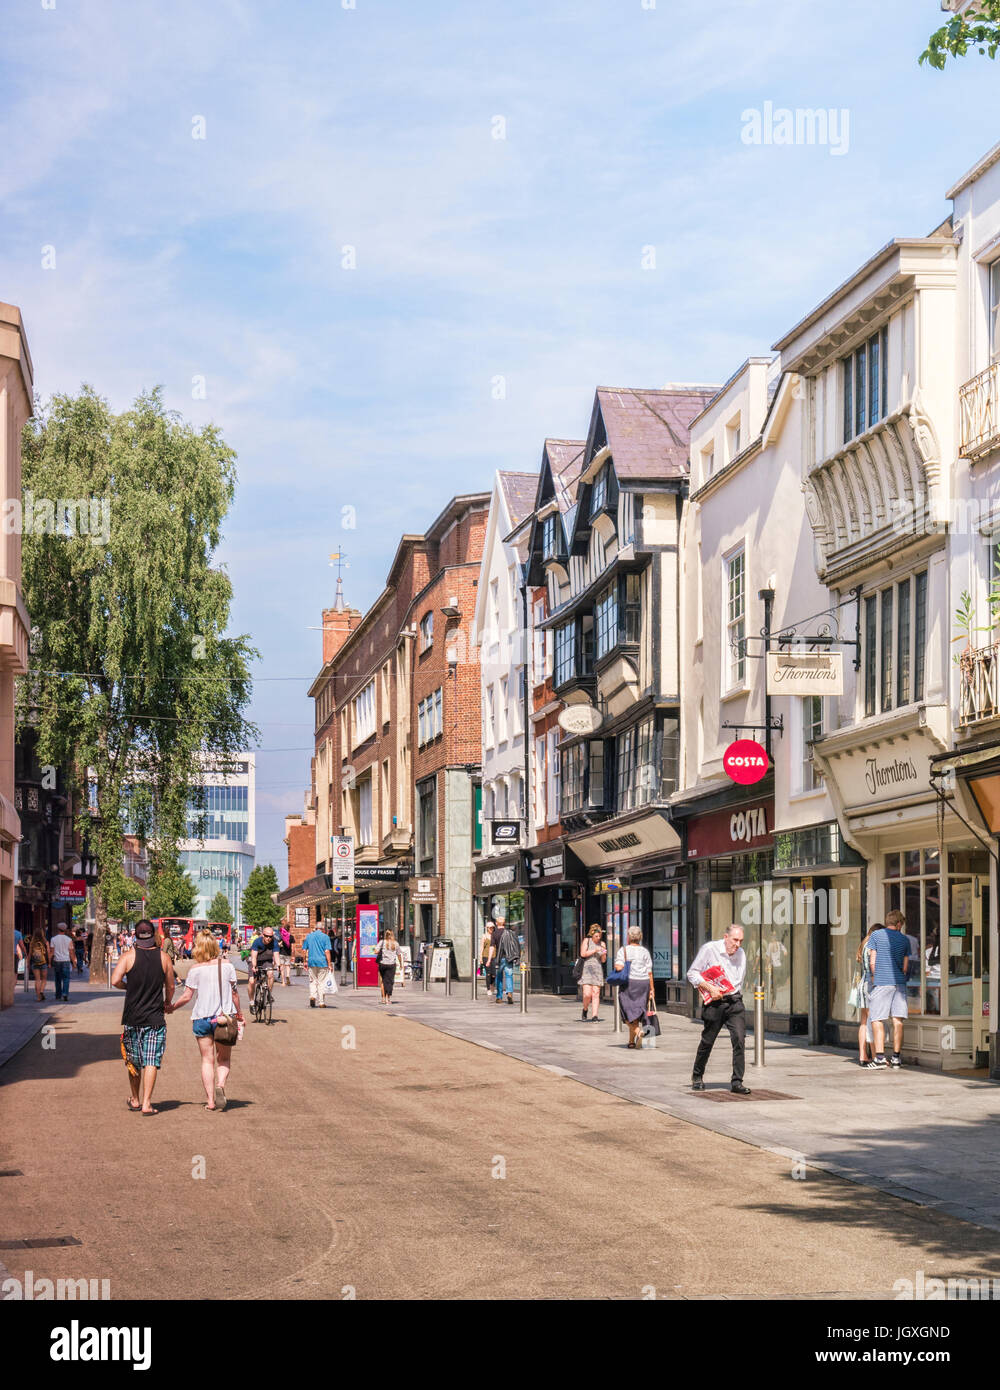 20 Juin 2017 : Exeter, Devon, England, UK - Shopping dans la rue principale sur une belle journée d'été. Banque D'Images